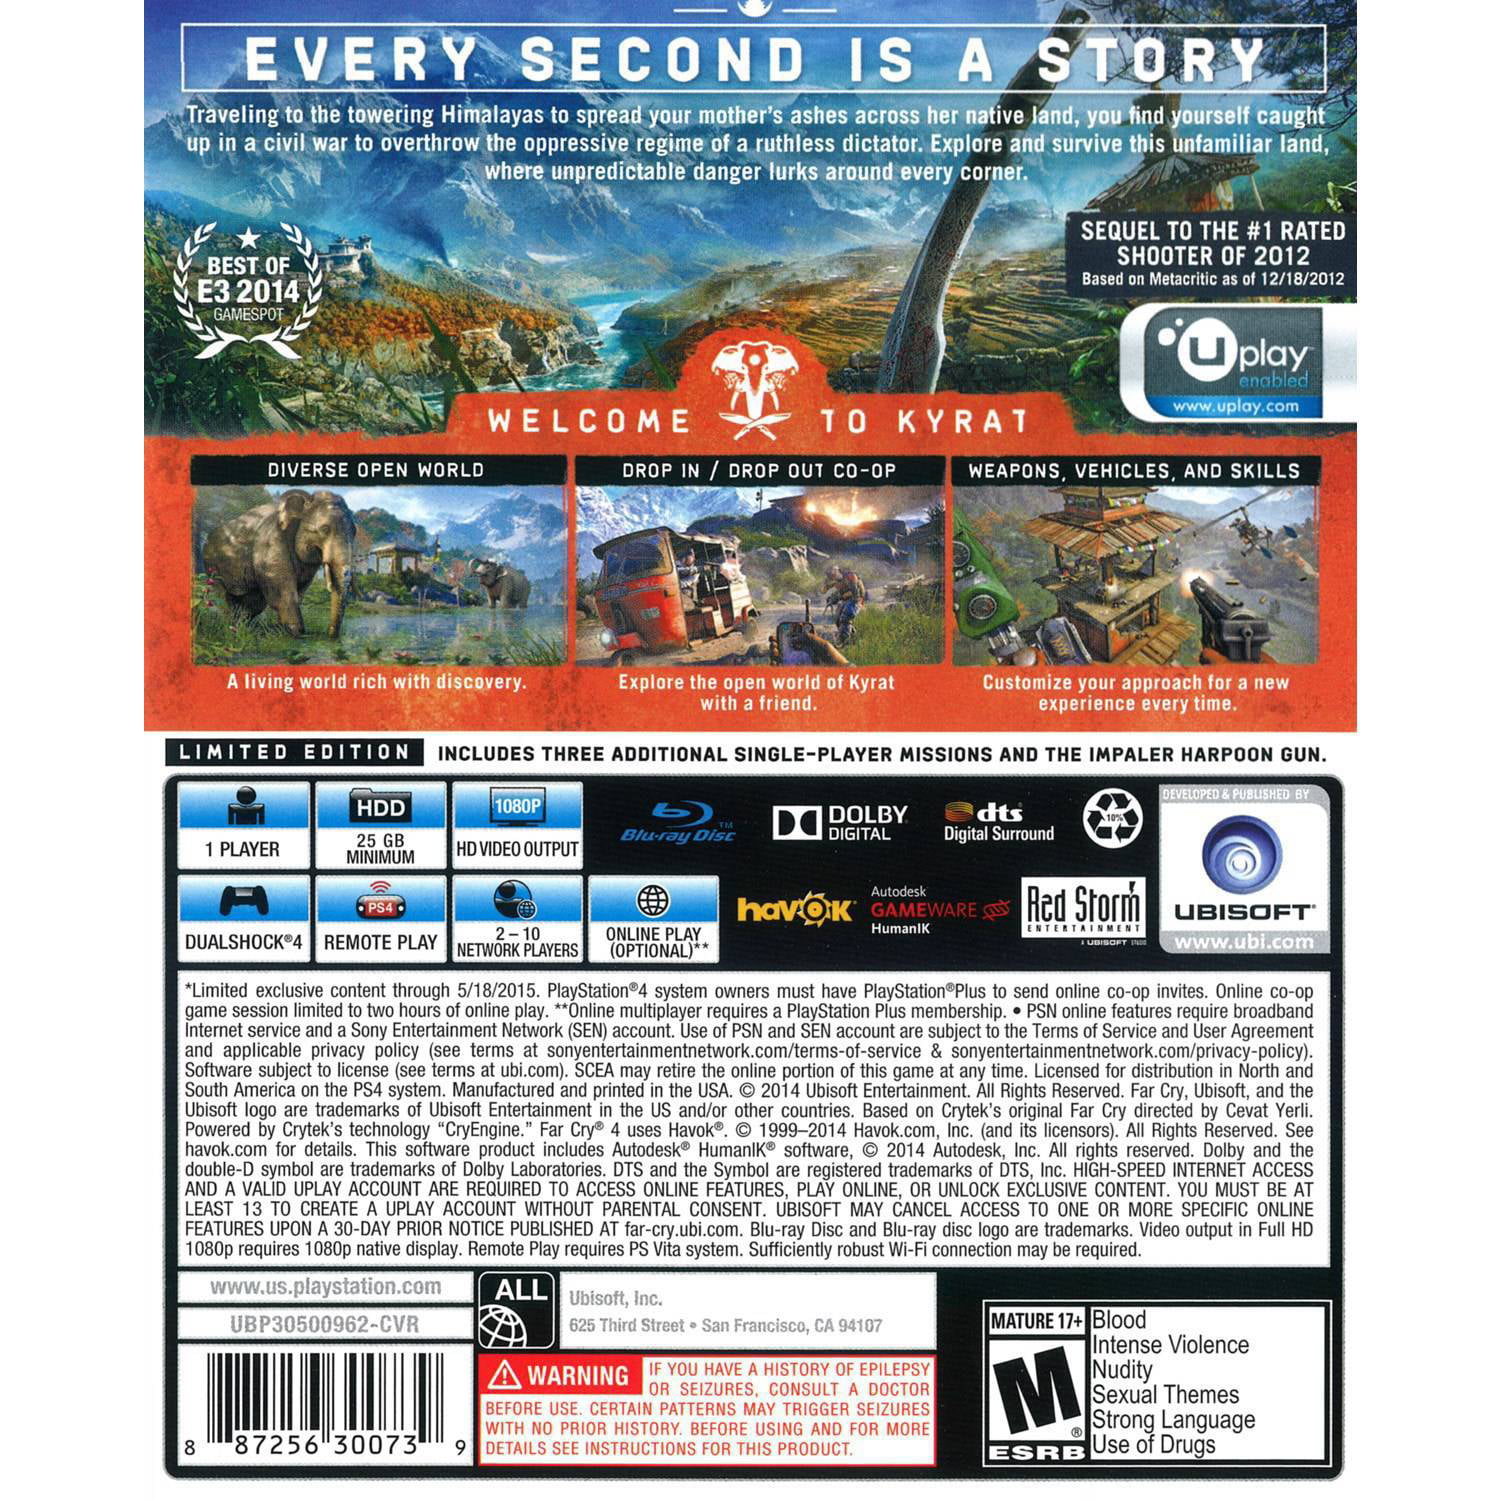 Jogo Far Cry 4 - Ps4 em Promoção na Americanas